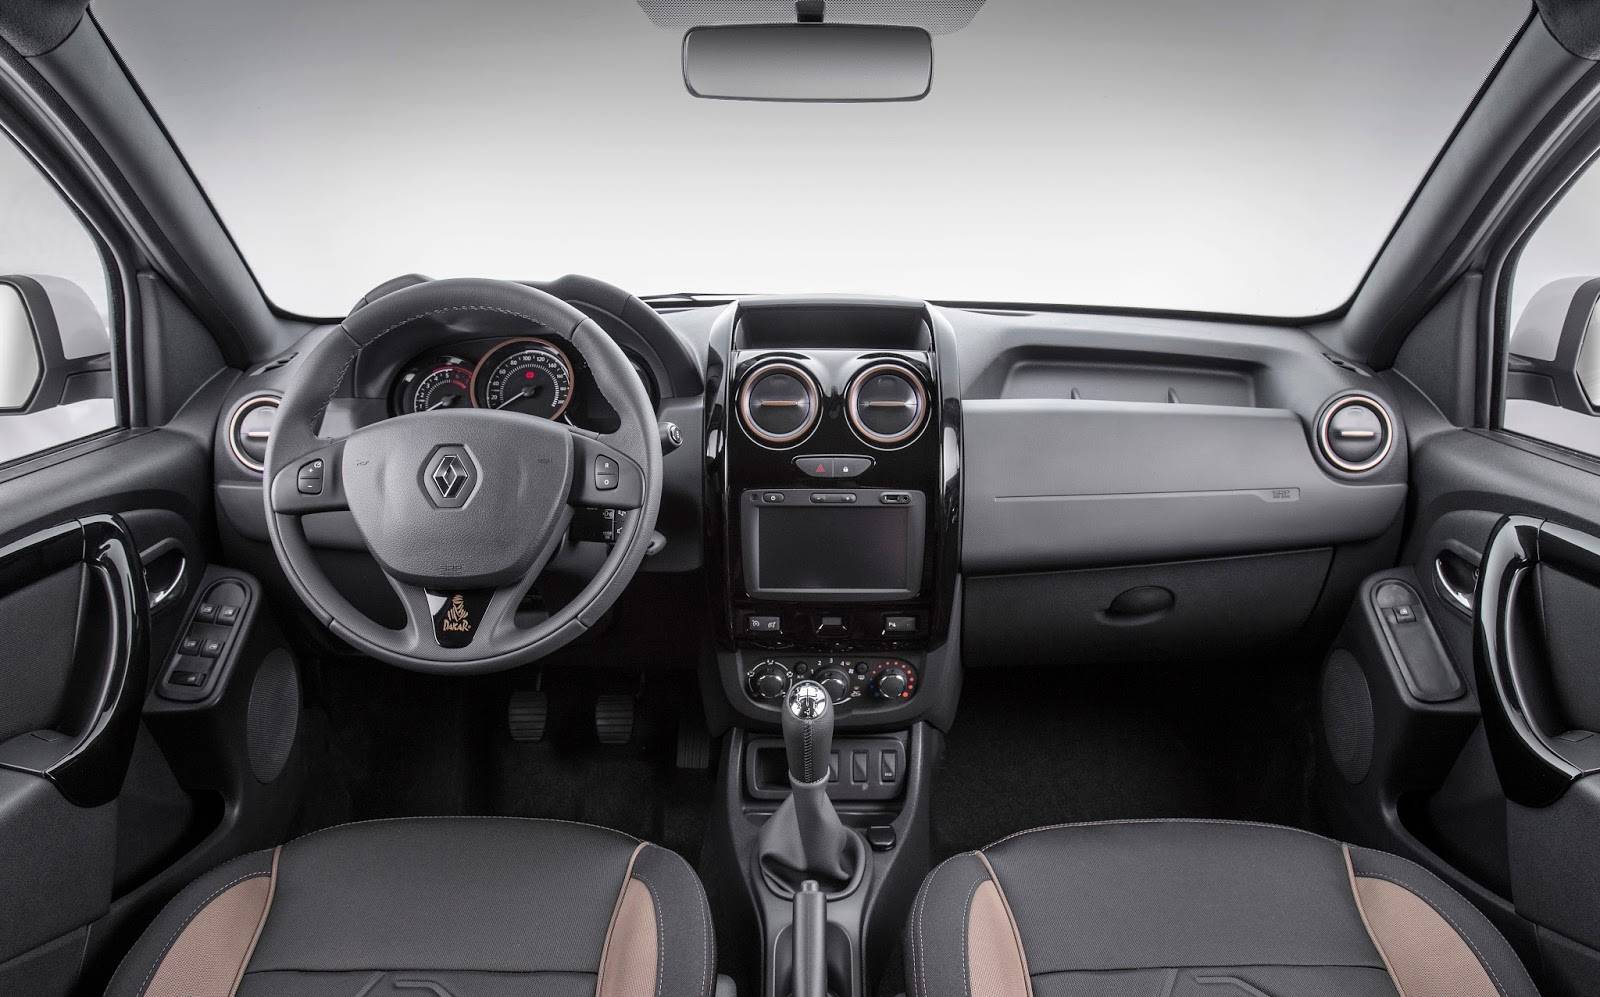 Renault duster dakar edition теперь в россии от 912000 рублей